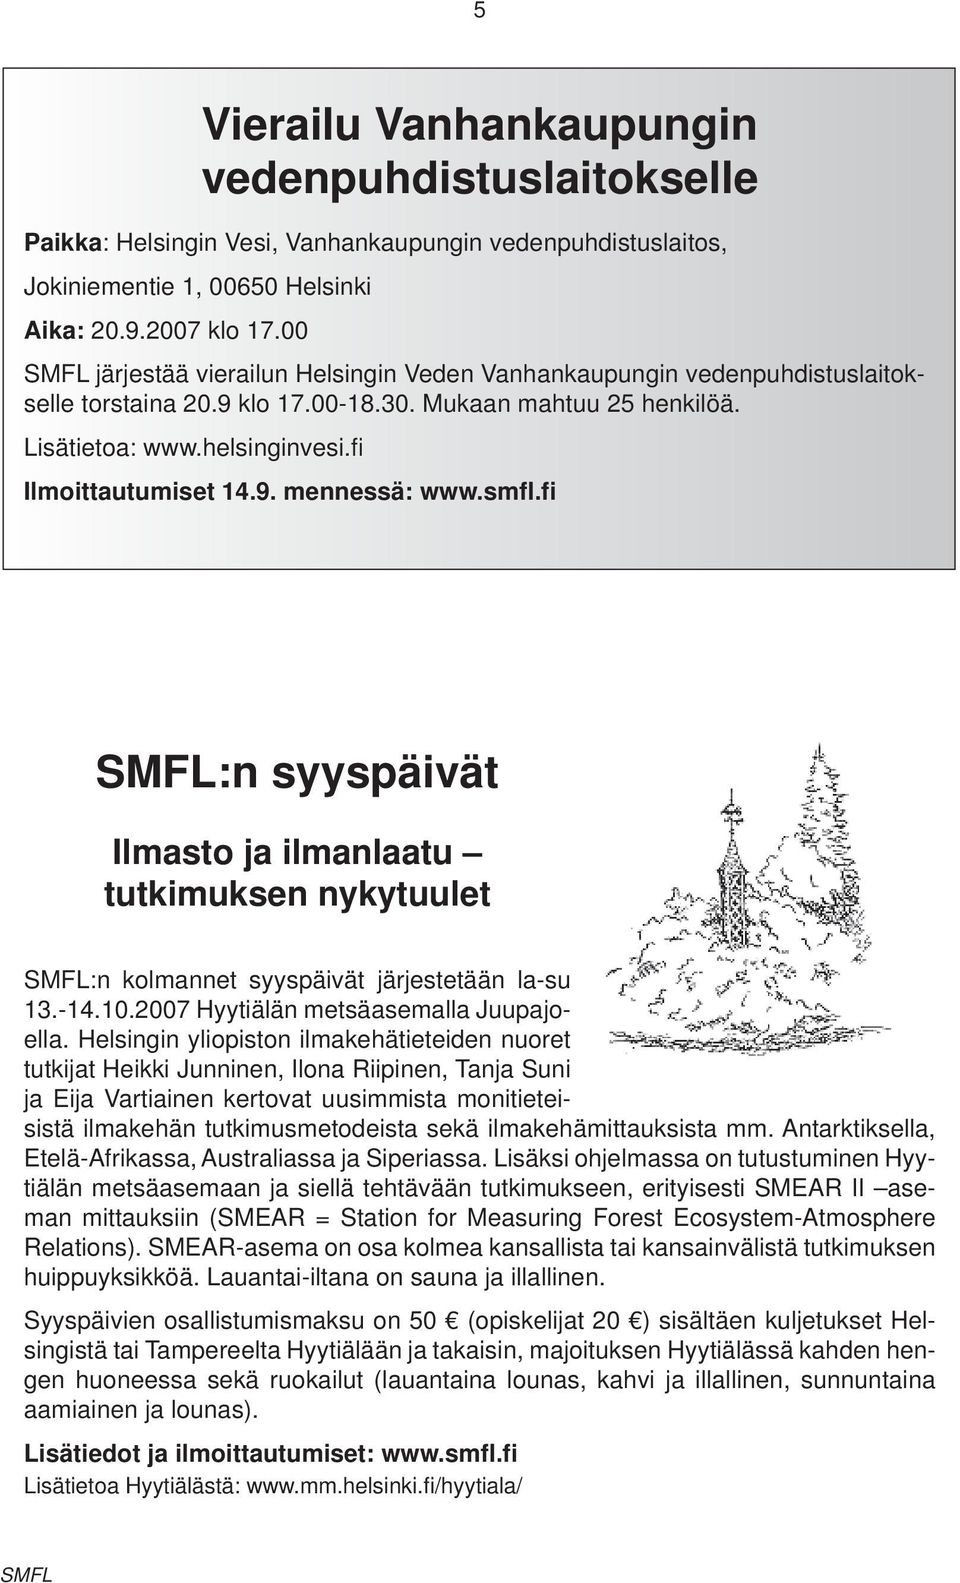 smfl.fi SMFL:n syyspäivät Ilmasto ja ilmanlaatu tutkimuksen nykytuulet SMFL:n kolmannet syyspäivät järjestetään la-su 13.-14.10.2007 Hyytiälän metsäasemalla Juupajoella.